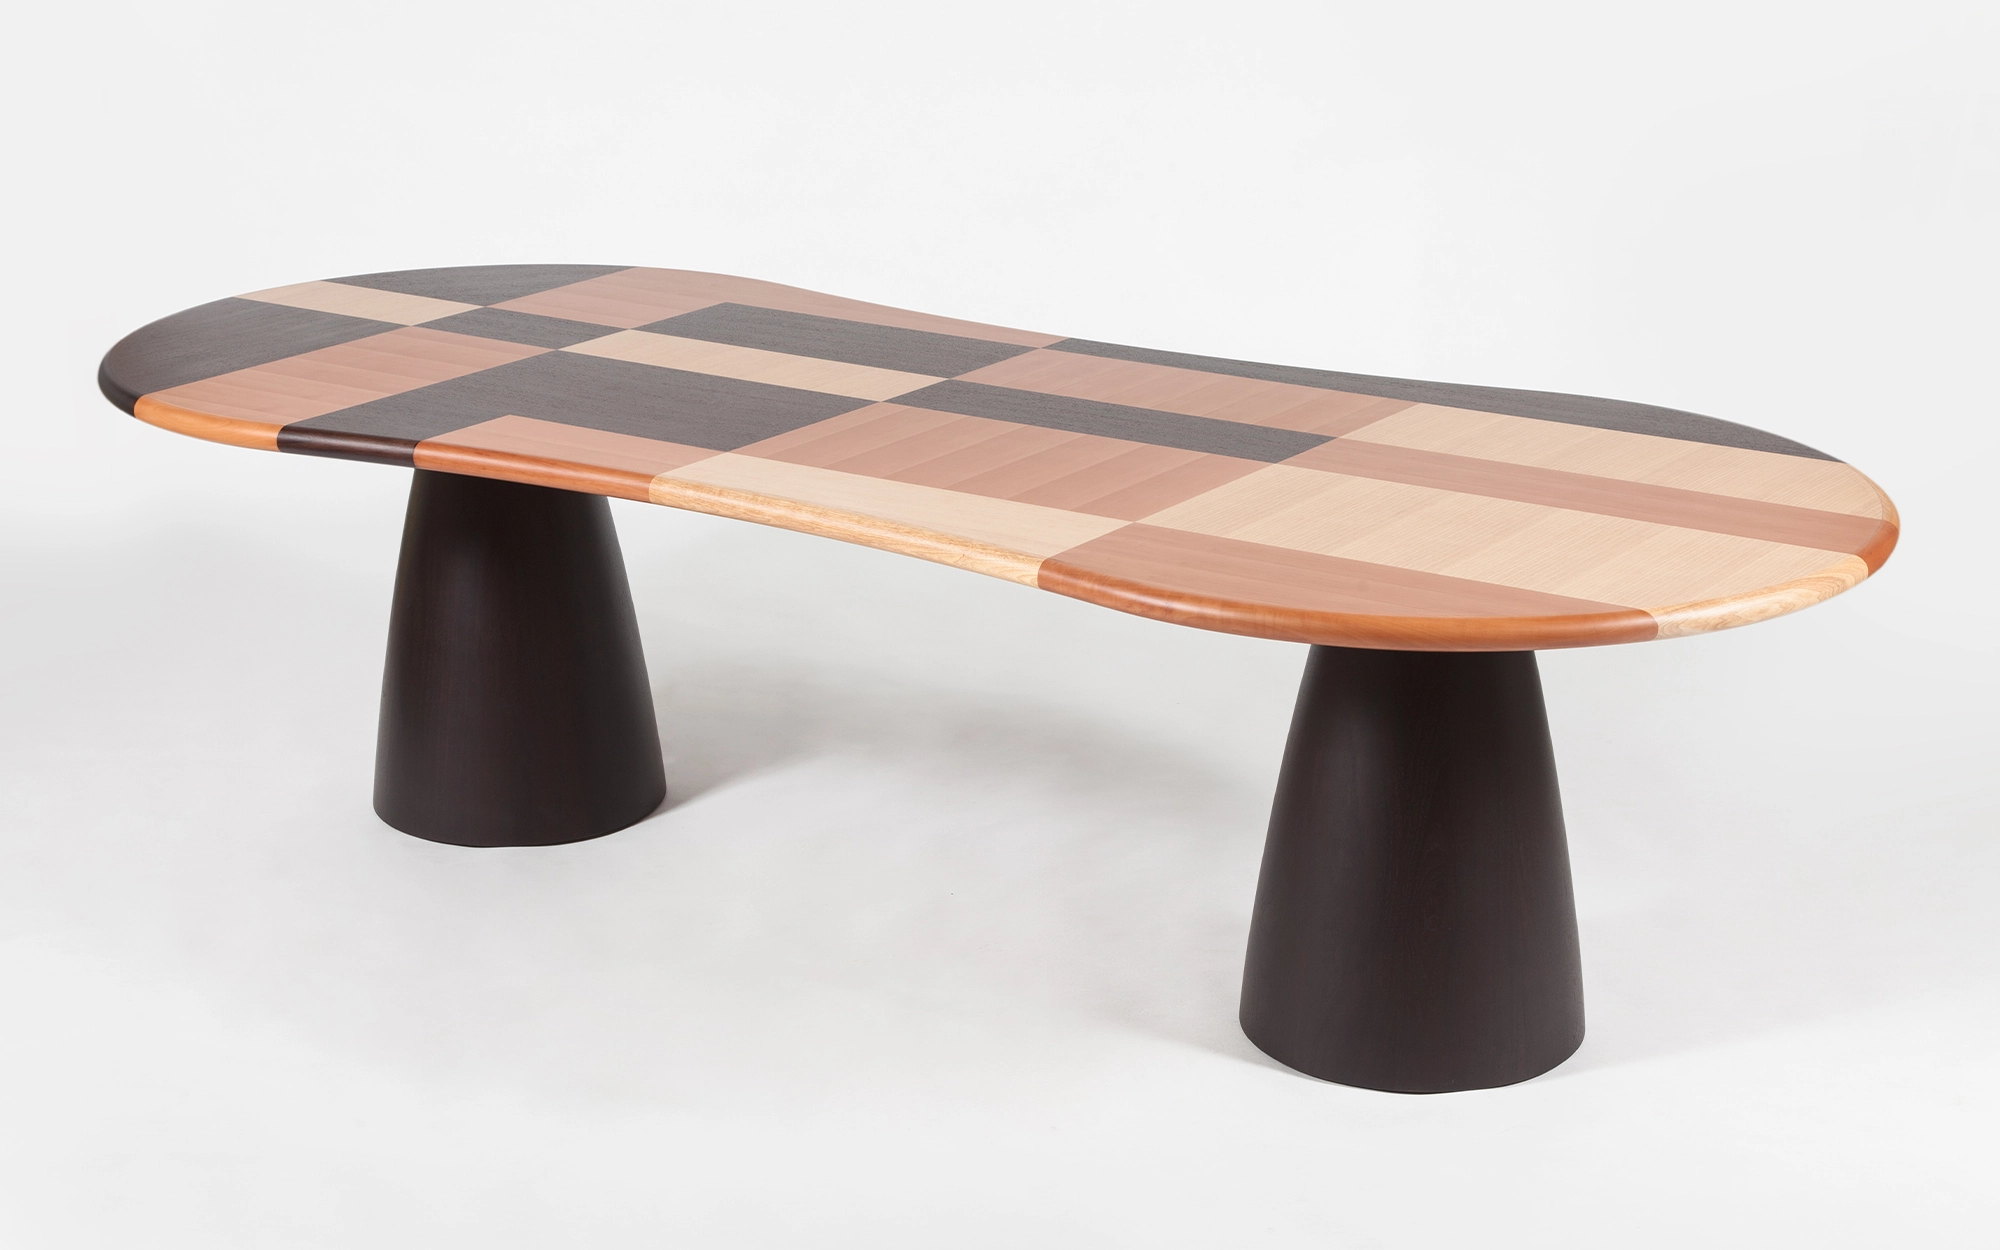 Firenze Table - Alessandro Mendini - Floor light - Galerie kreo